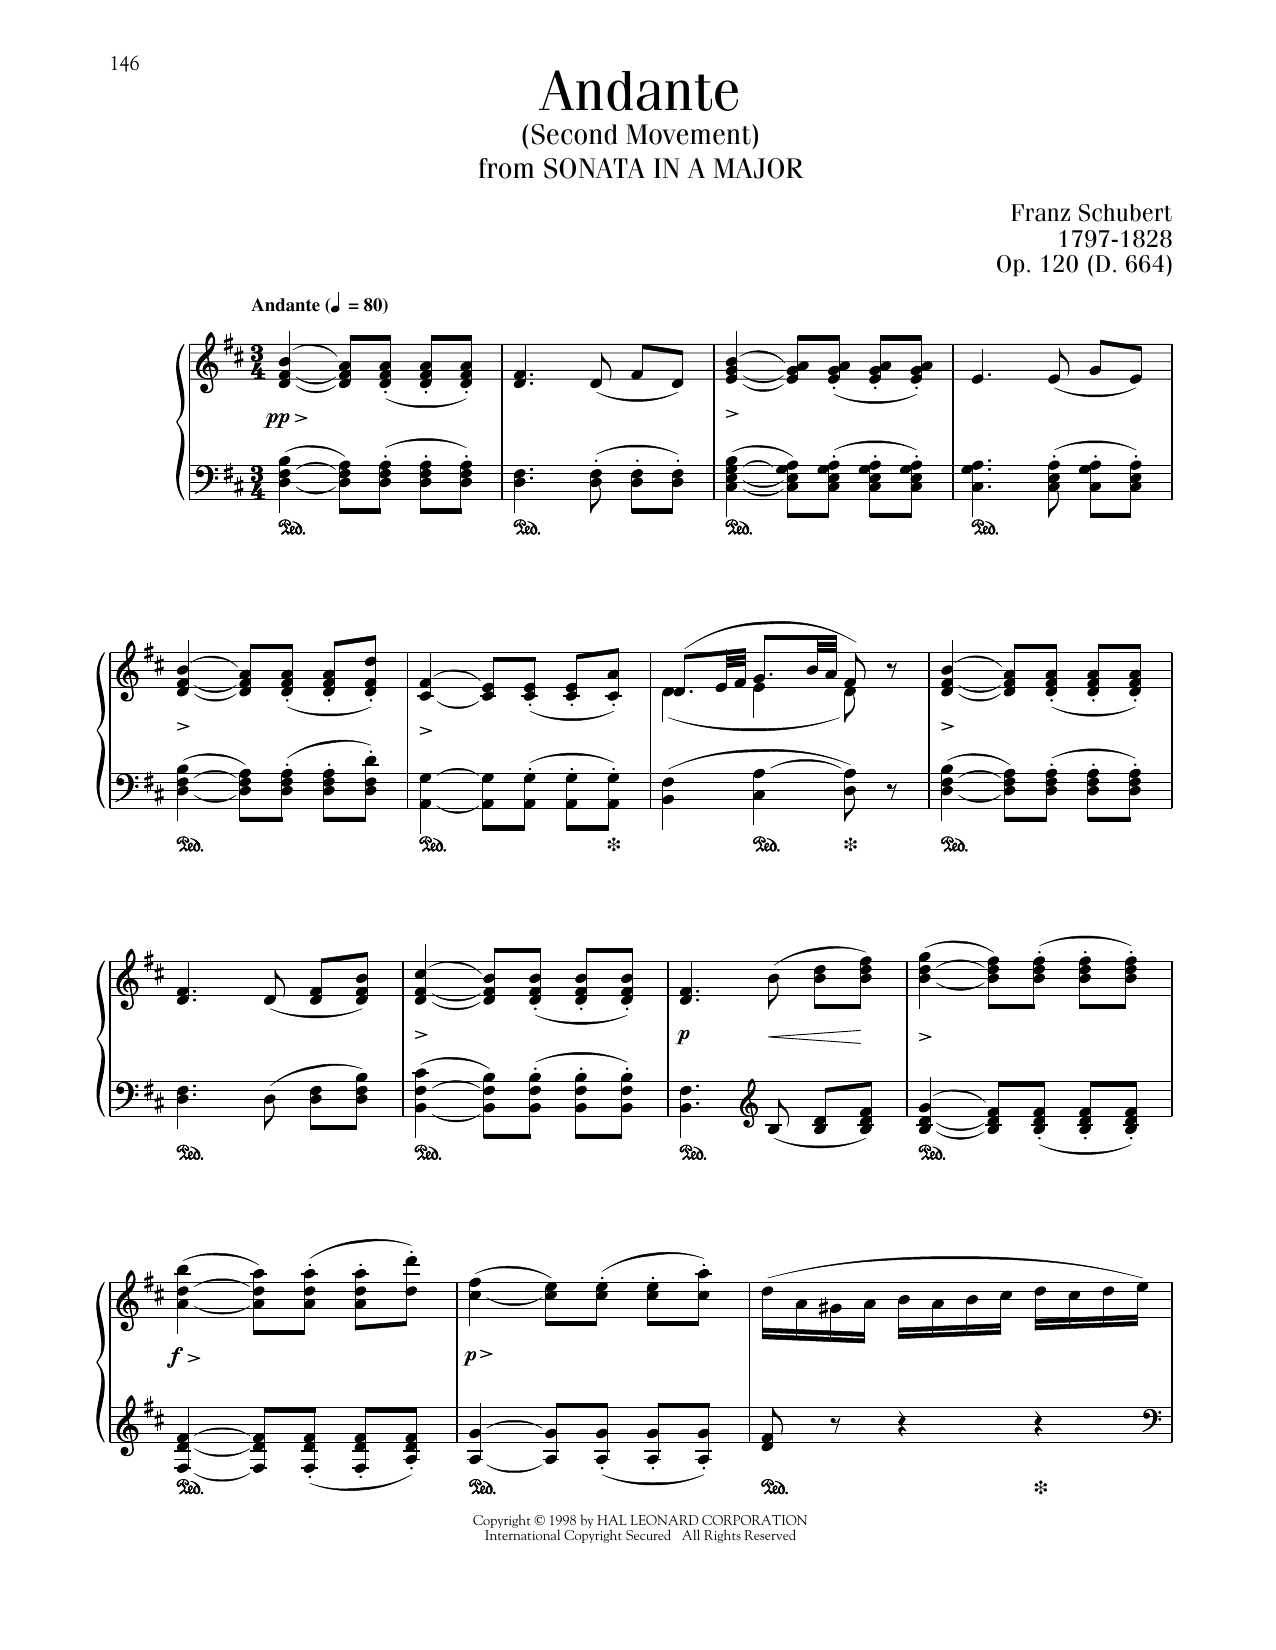 Franz Schubert Andante, Op. 120, D. 664, Second Movement sheet music notes printable PDF score